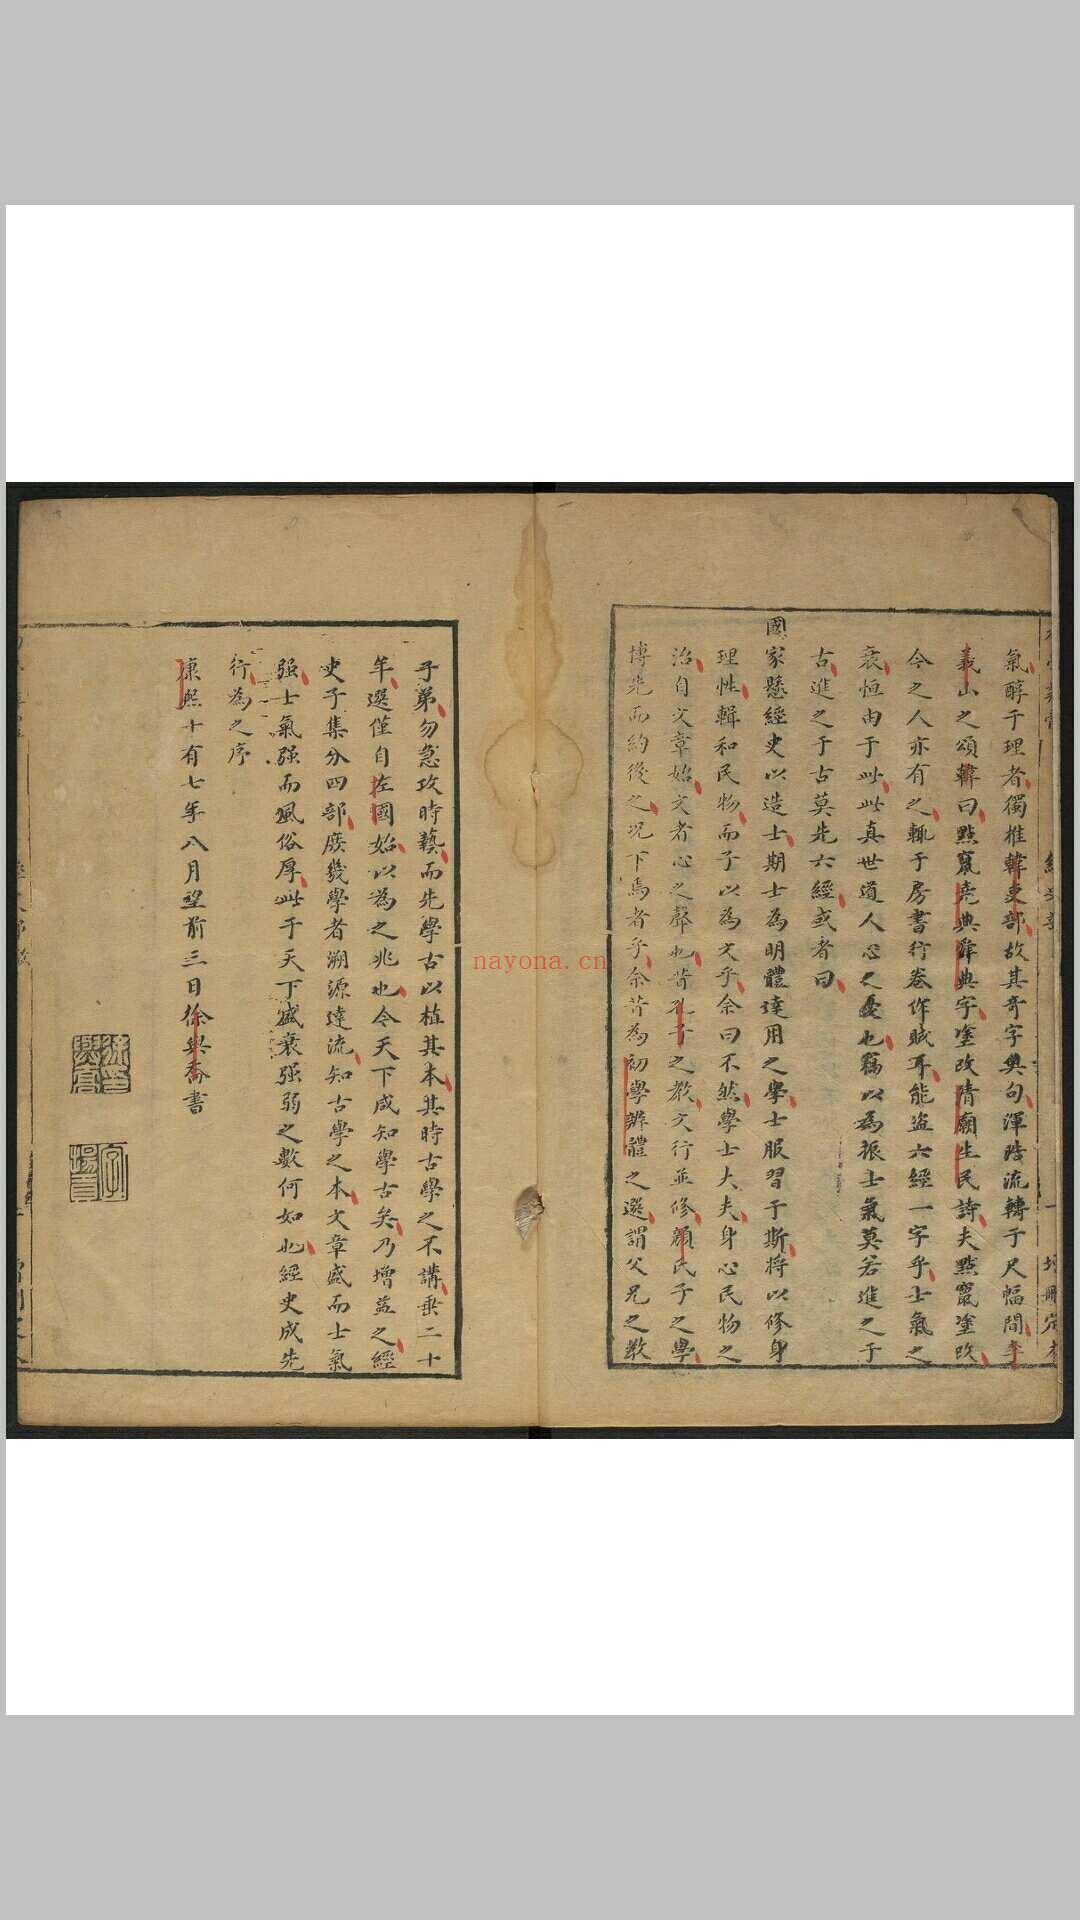 初学辨体增删定本 不分卷 徐与乔辑评 易安斋, 清康熙17年